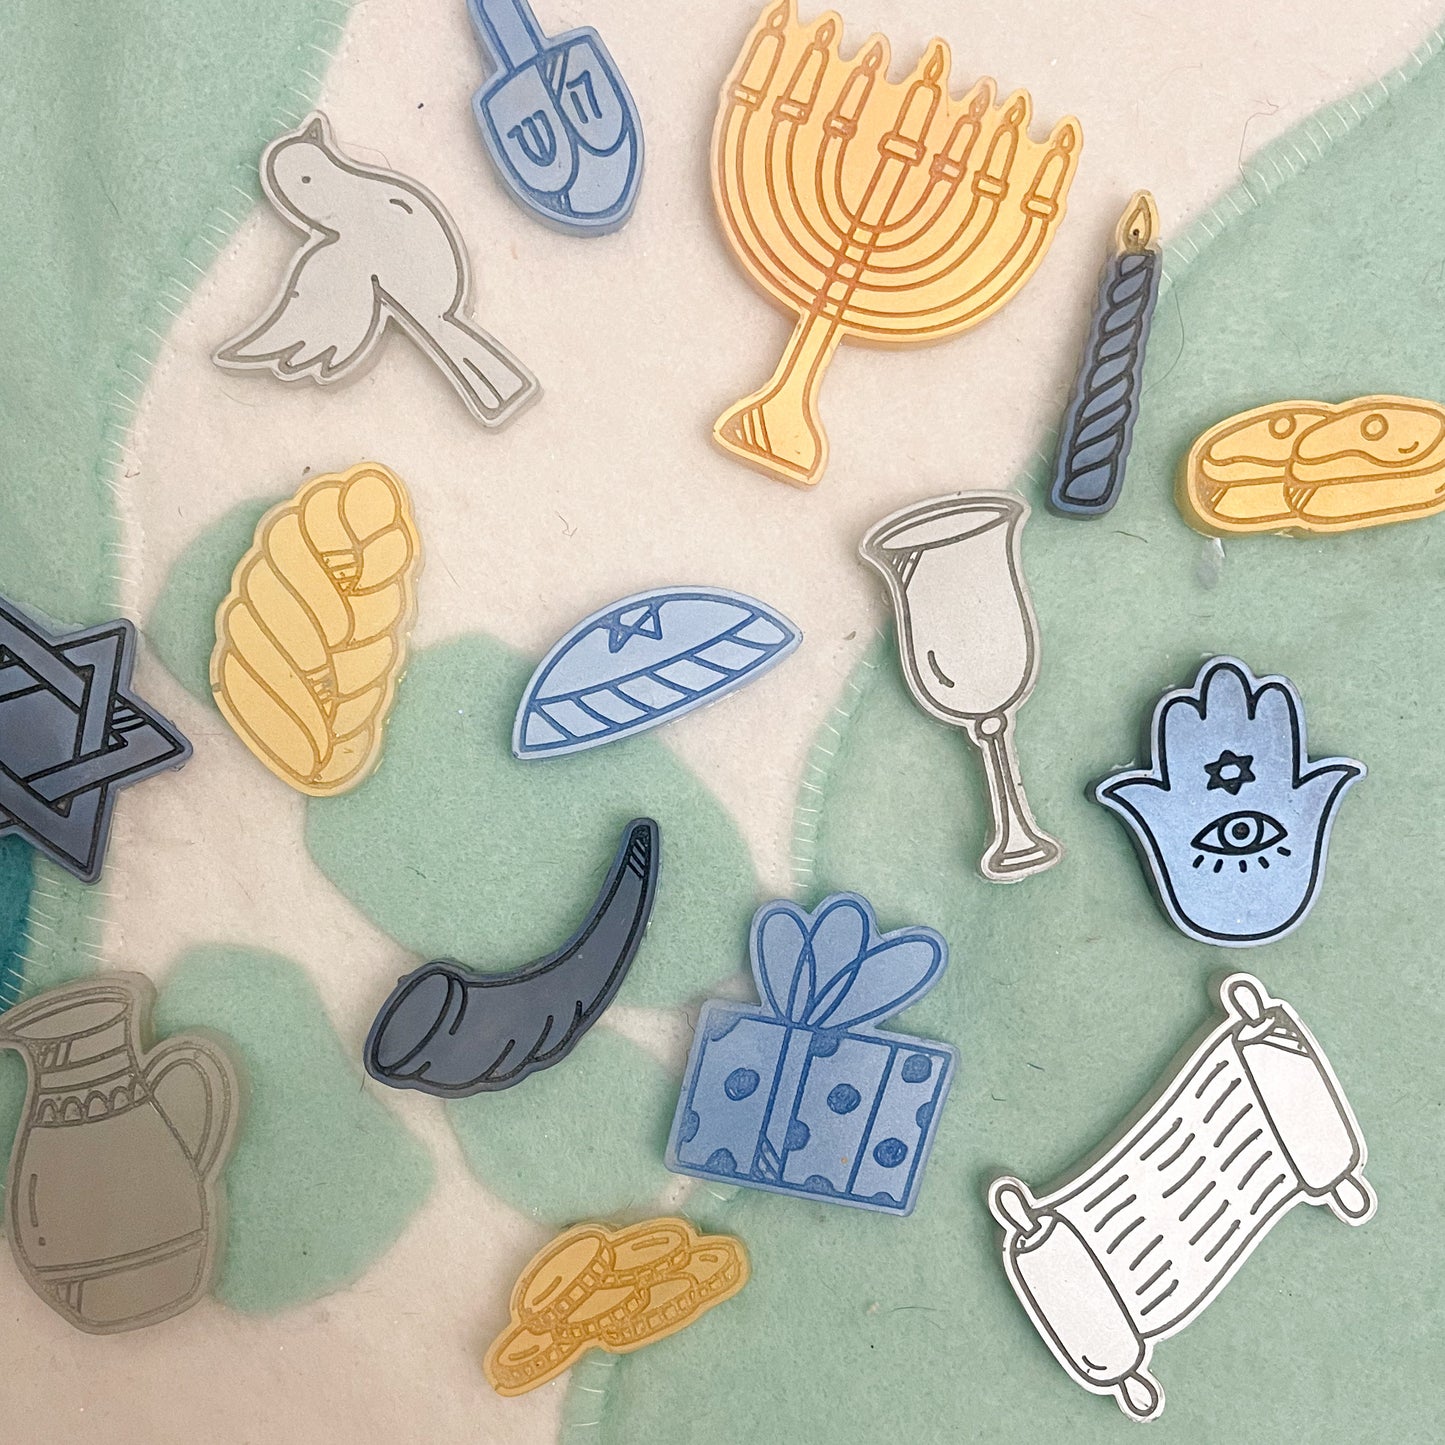 Jewish/Hanukkah loose parts